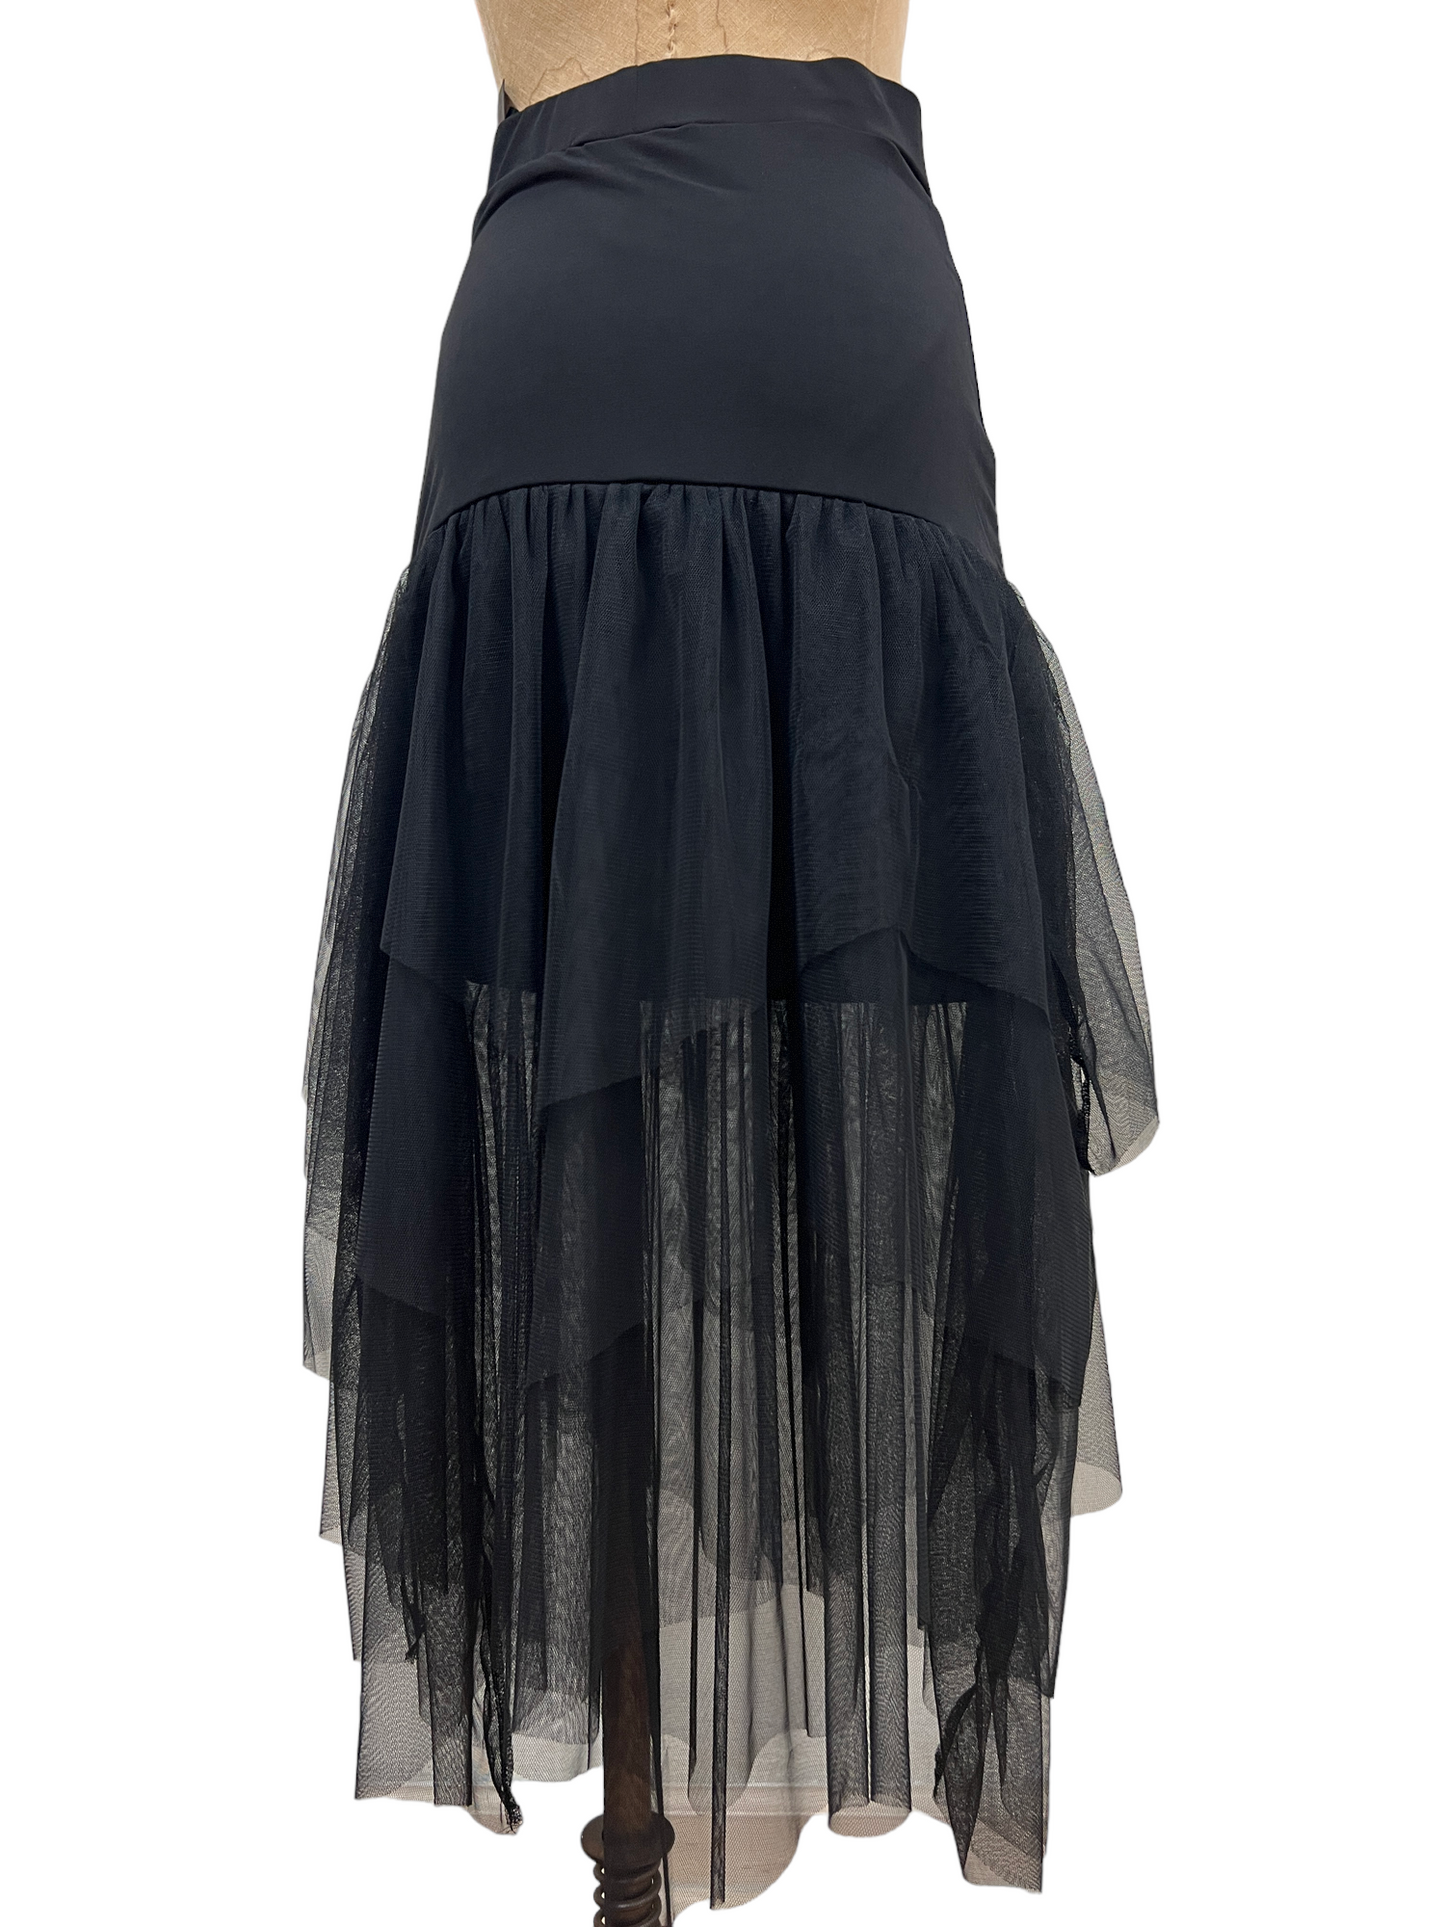 Madi Skirt in Black